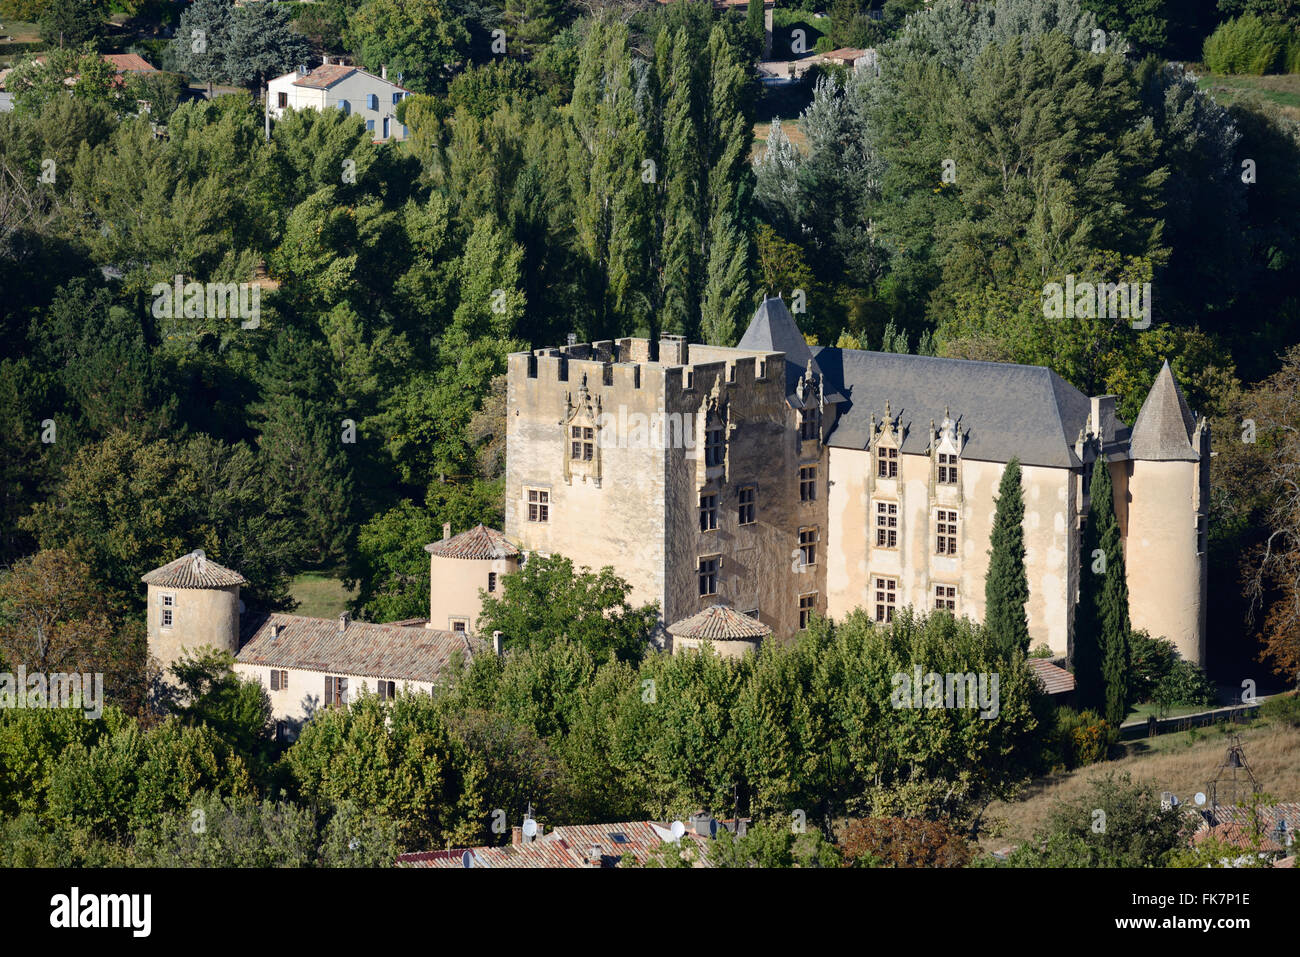 Cité médiévale et Château Renaissance (c14e) Allemagne-en-Provence Bouches-du-Rhône Provence France Banque D'Images